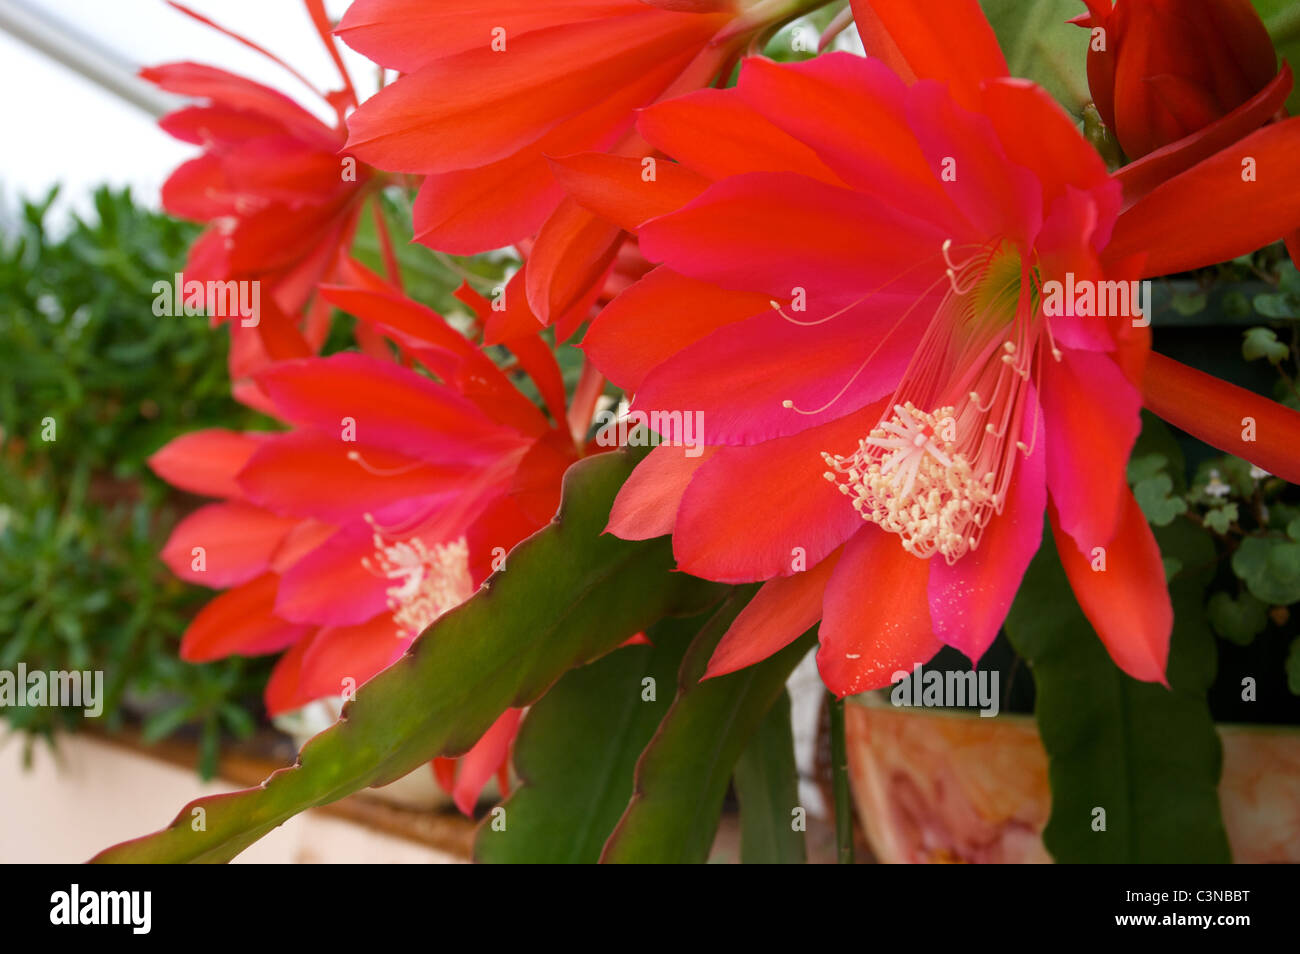 Epiphyllum légèrement Sassy' fleurs cactus rouge dans la véranda Banque D'Images